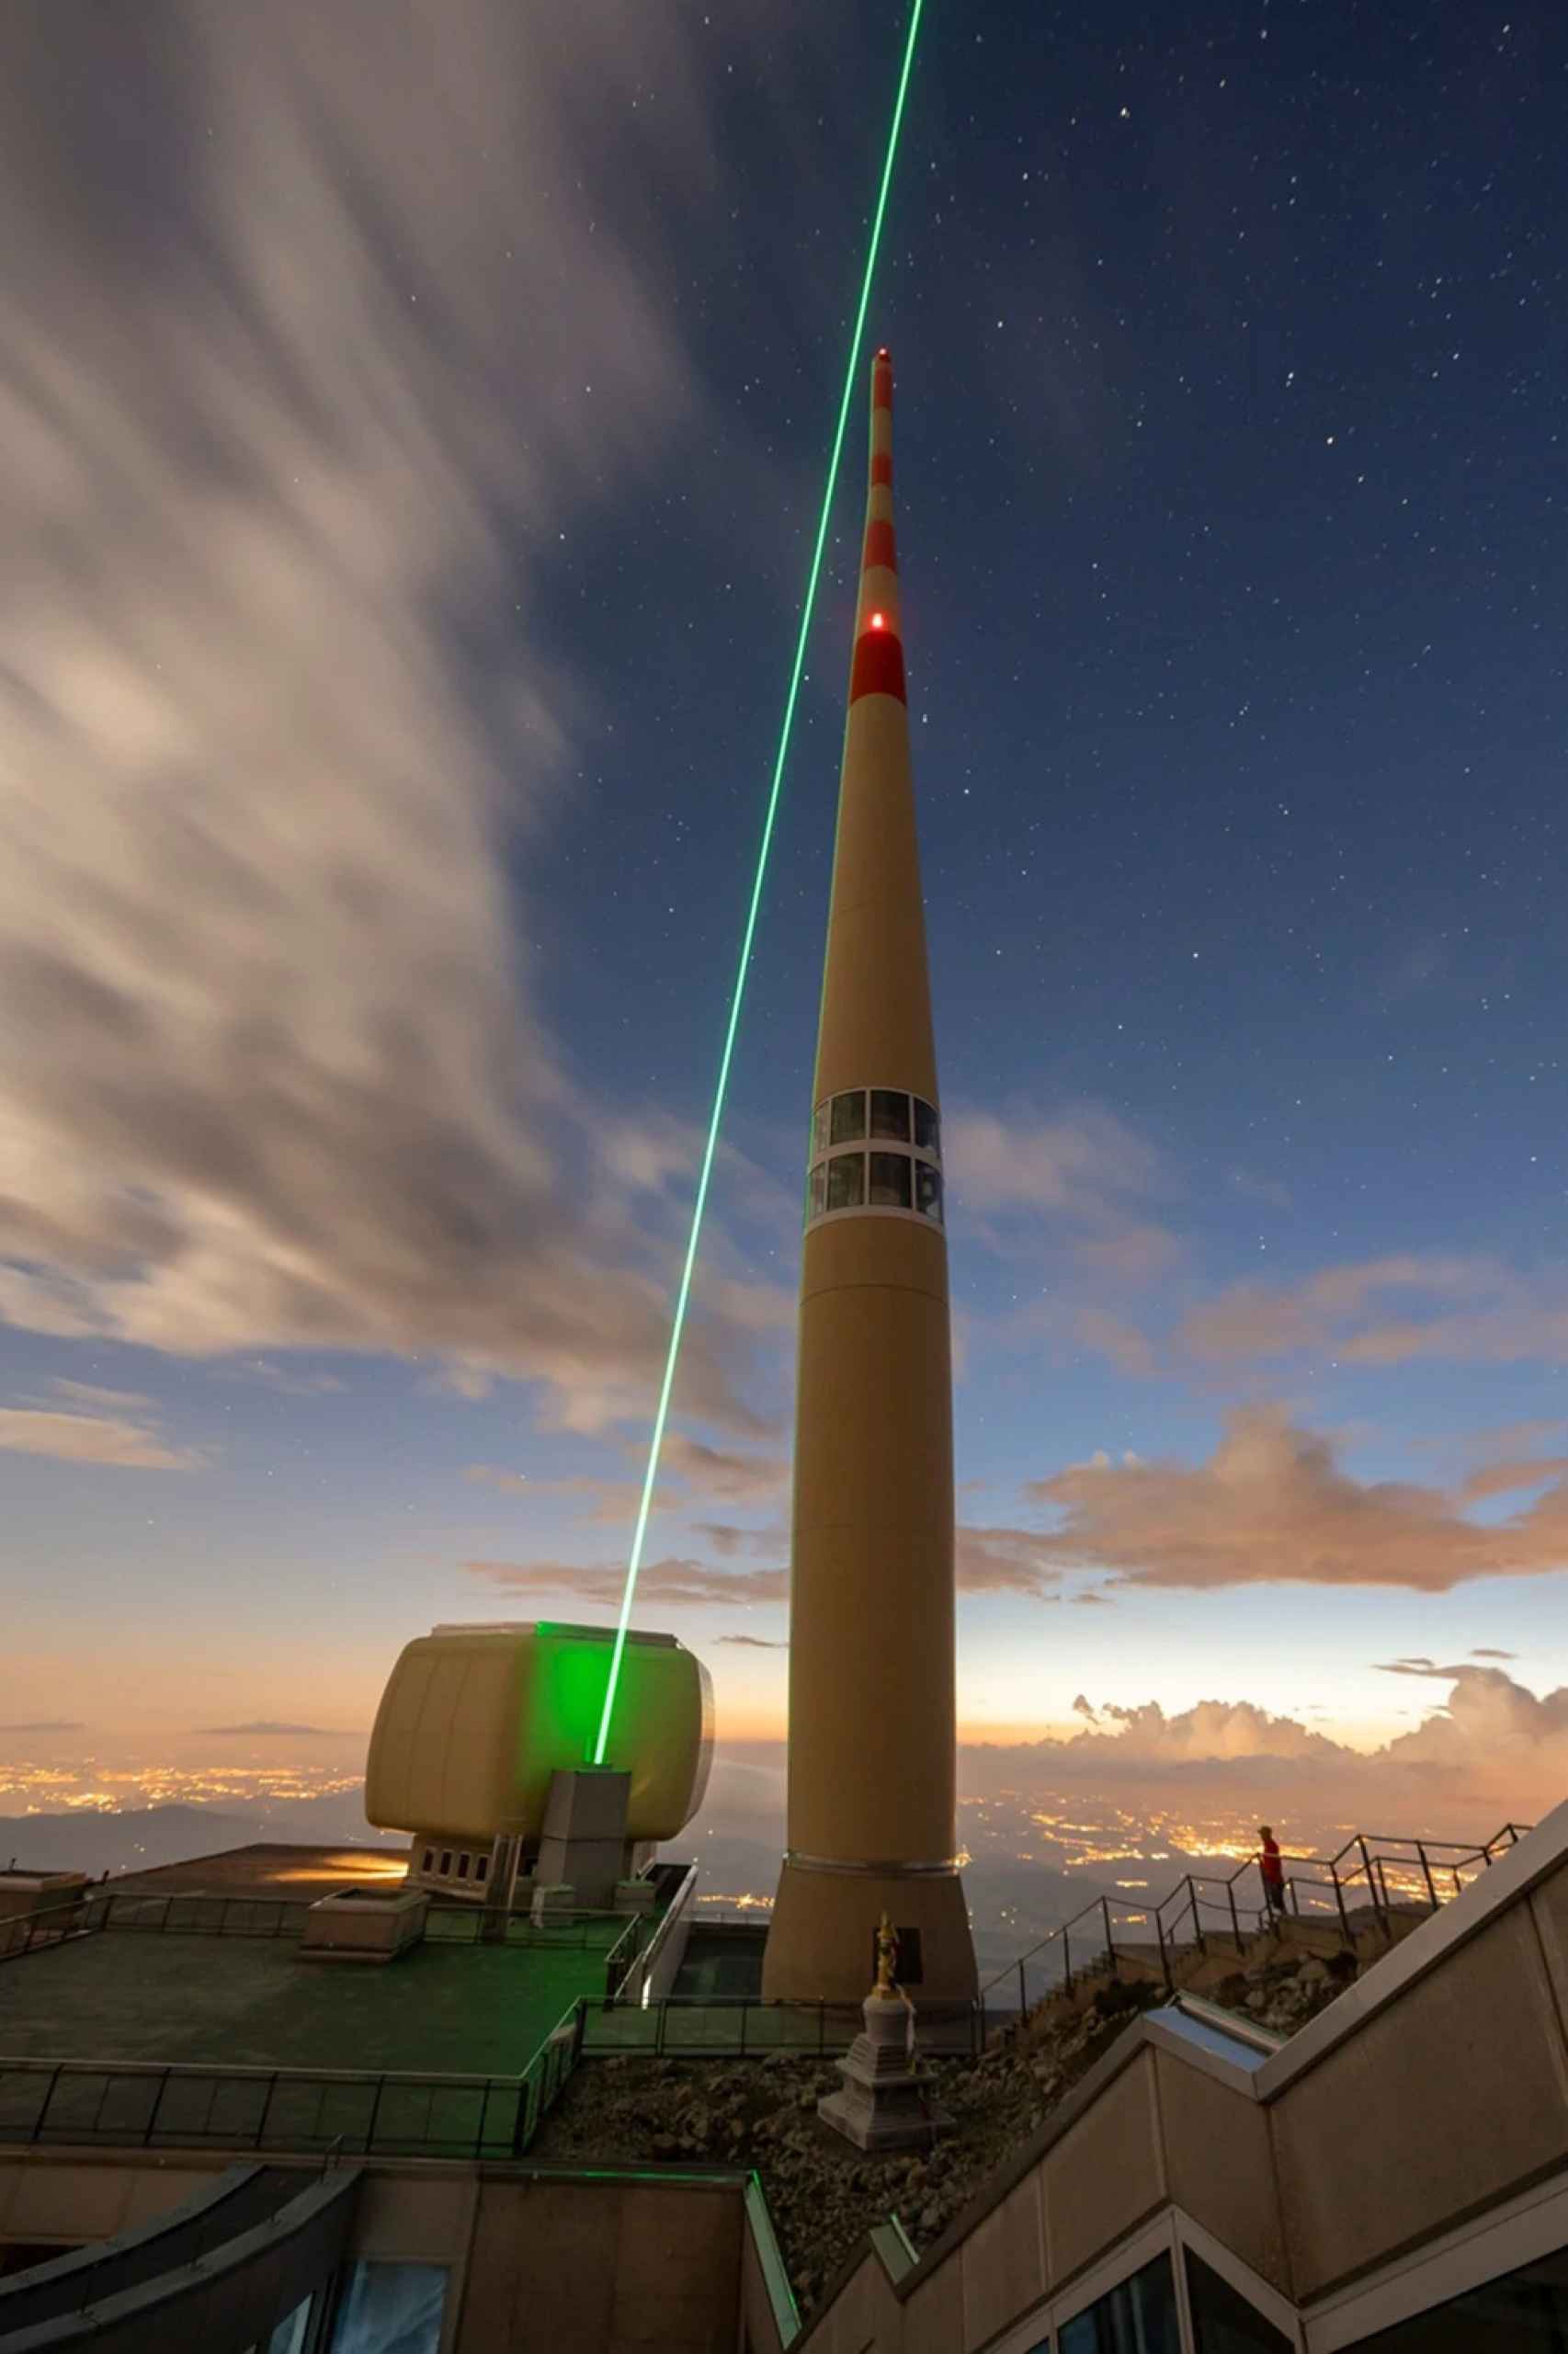 Una imagen más cercana del láser lanzado desde la torre de comunicaciones de Säntis.